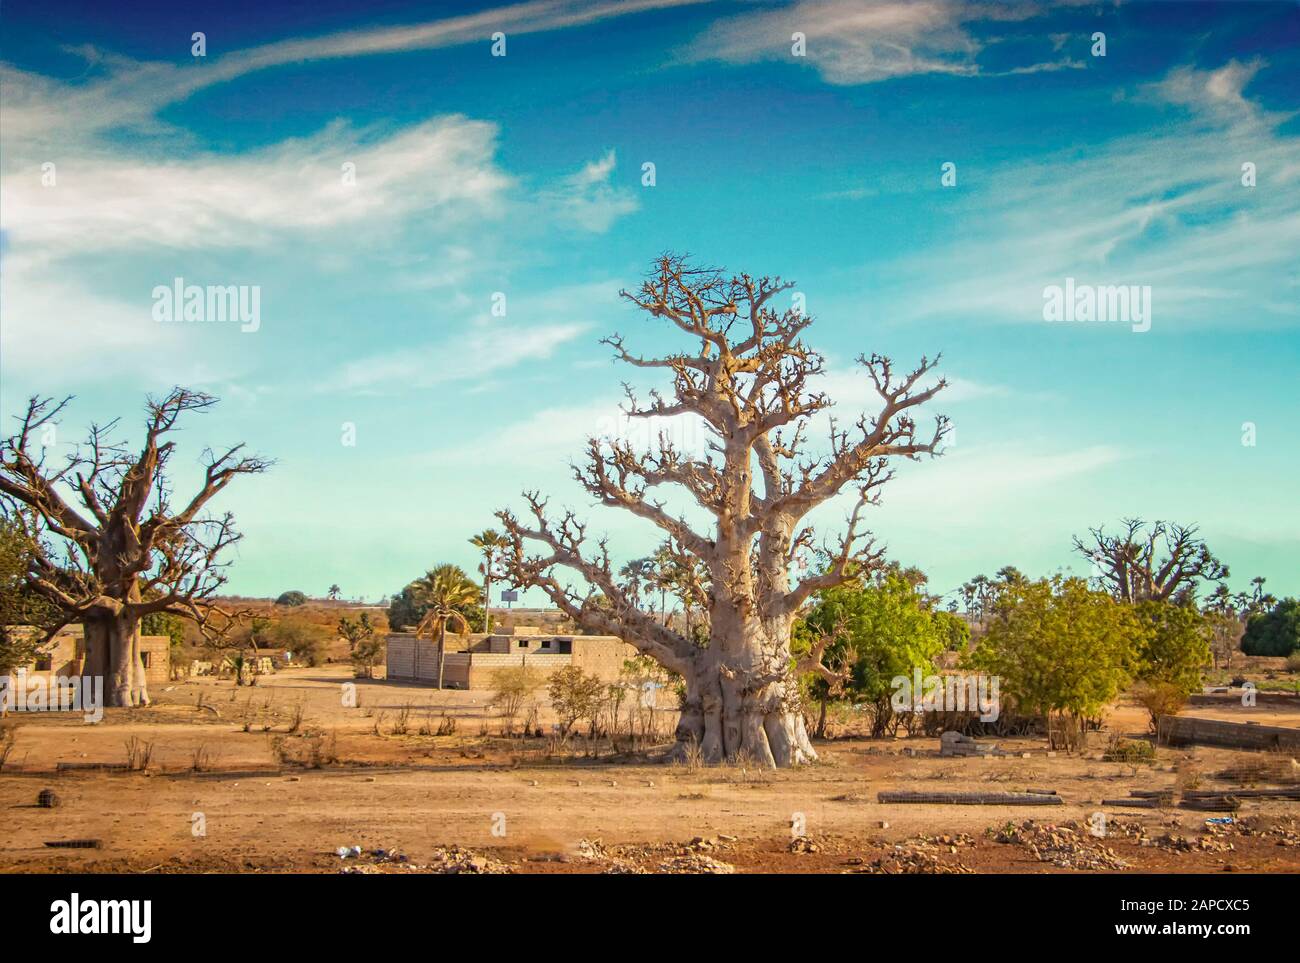 Savane africaine avec arbre baobab typique au Sénégal, Afrique. Il est près de Dakar. En arrière-plan est un ciel bleu. Banque D'Images